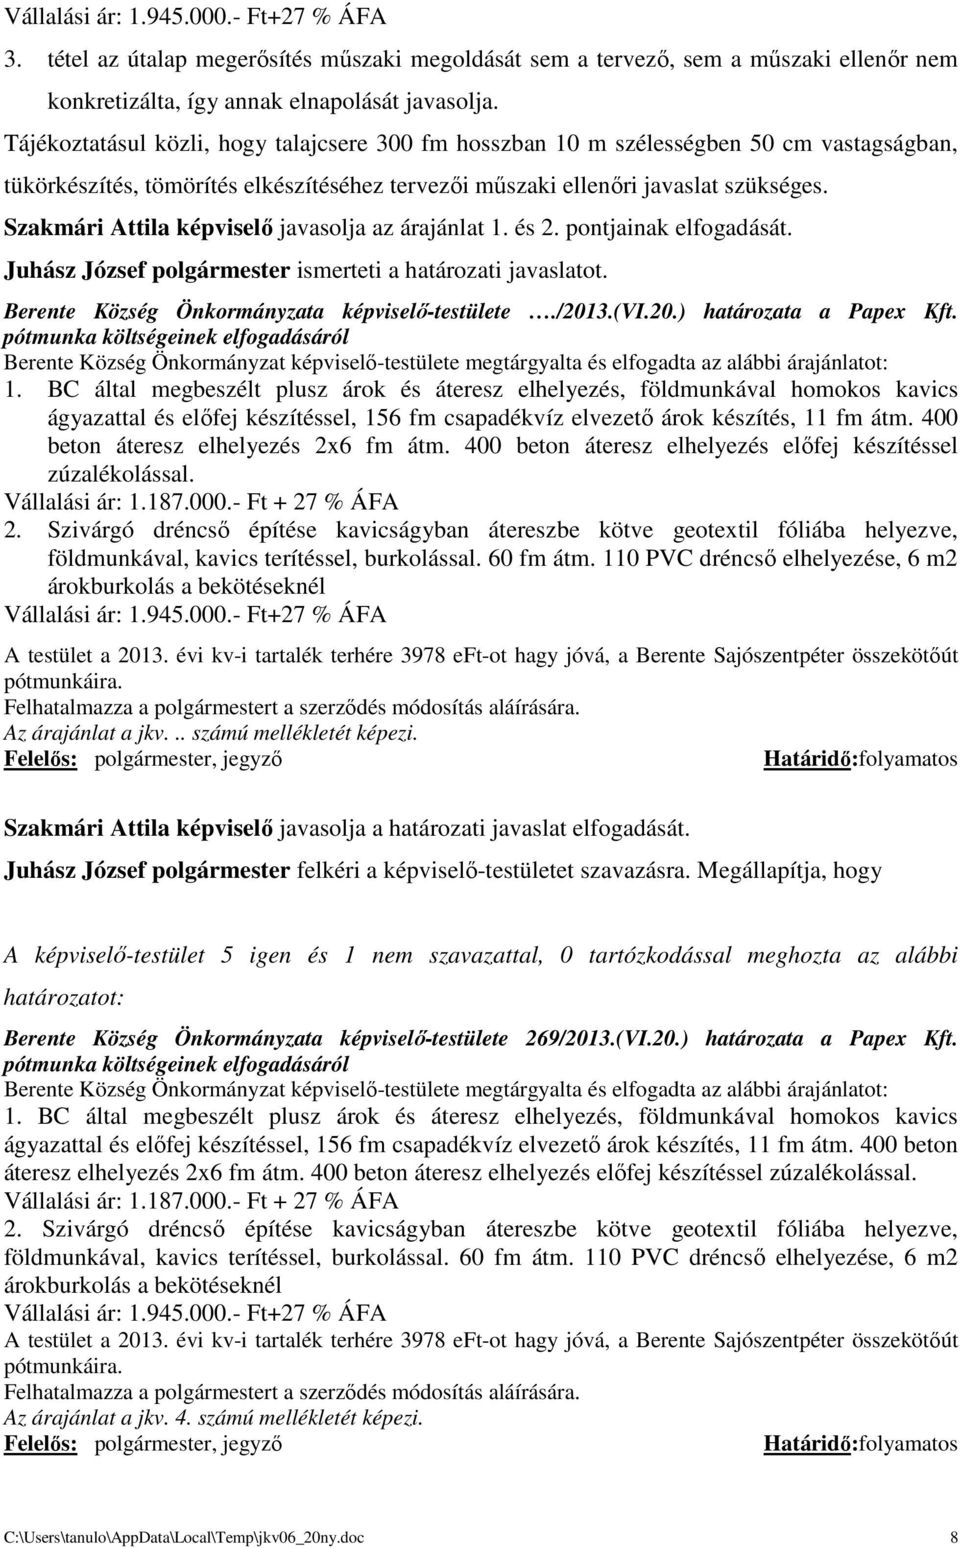 Szakmári Attila képviselő javasolja az árajánlat 1. és 2. pontjainak elfogadását. Berente Község Önkormányzata képviselő-testülete./2013.(vi.20.) határozata a Papex Kft.